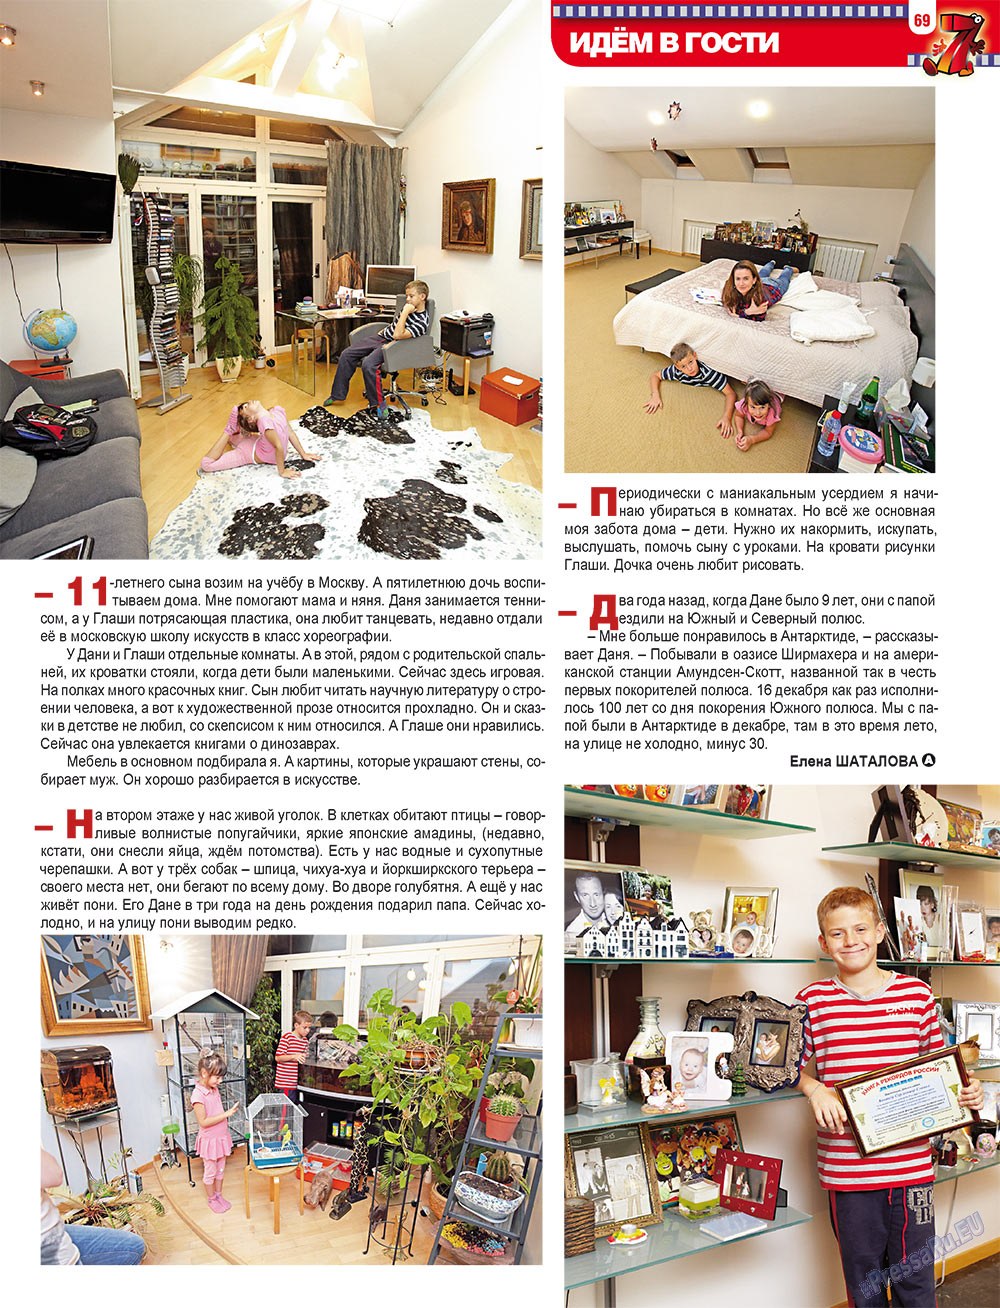 7плюс7я, журнал. 2012 №3 стр.69